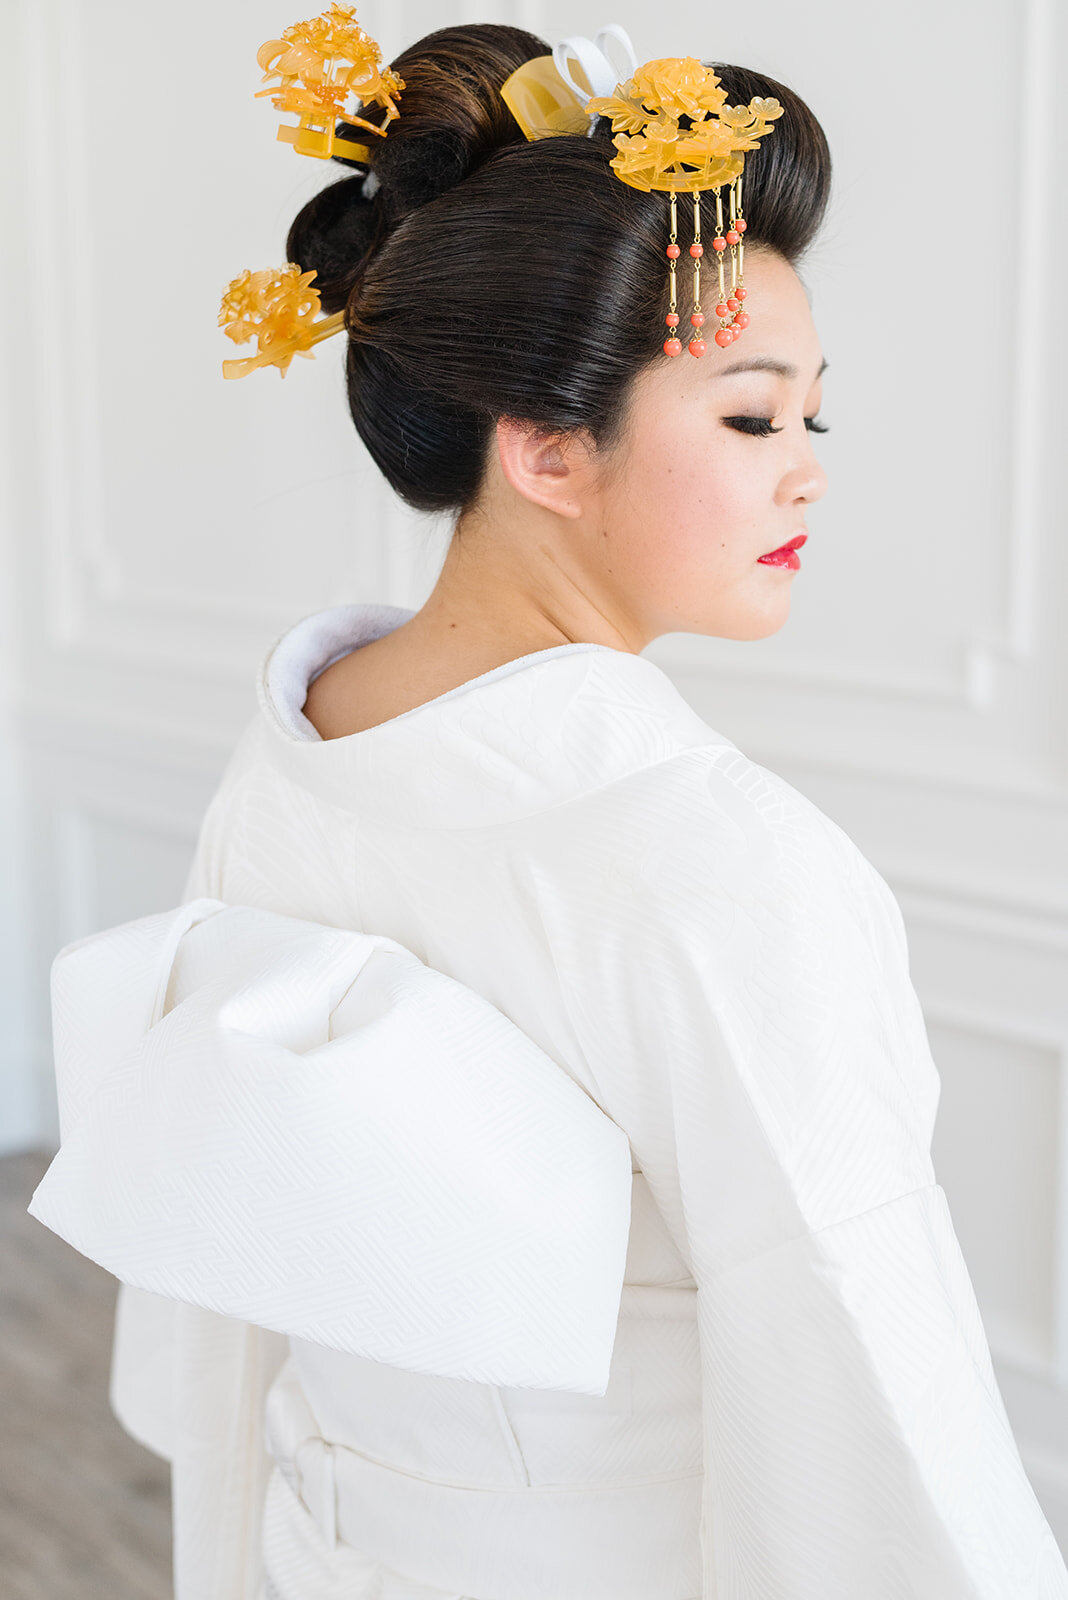 Geisha Dancing Kimono Traditional Hairstyle Kanzashi Stock Photo 777936943  | Shutterstock